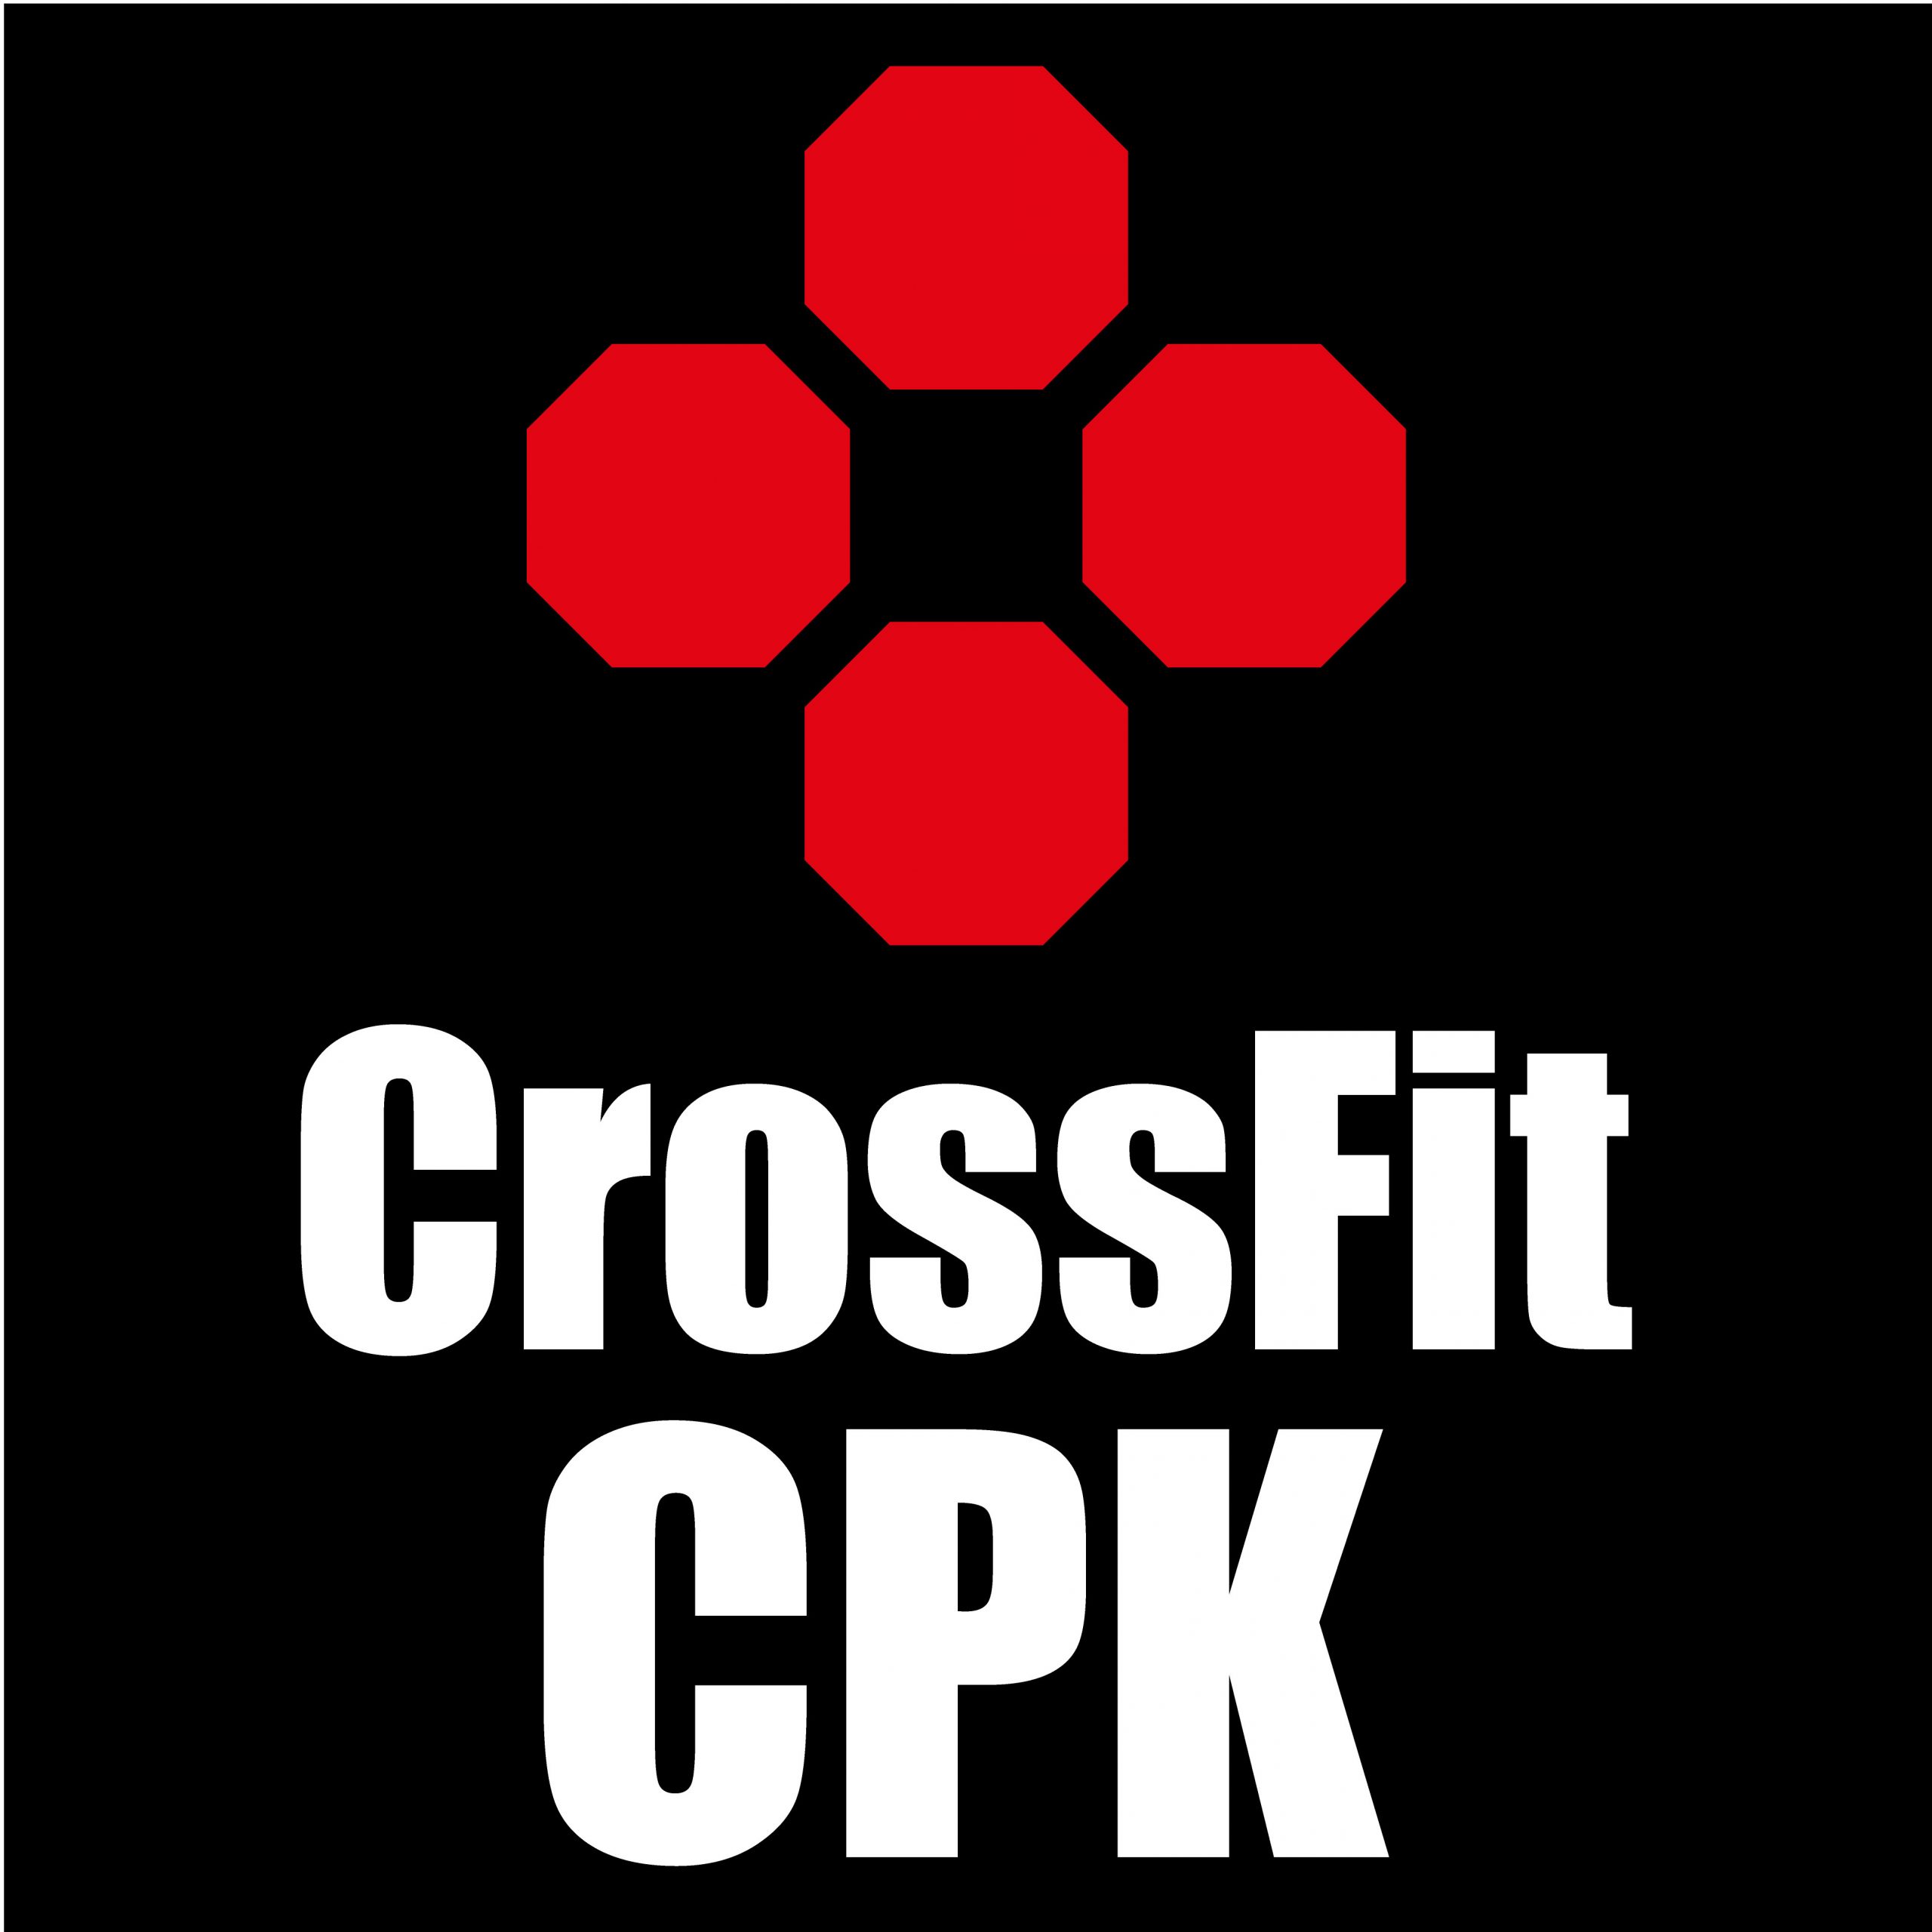 CrossFit CPK